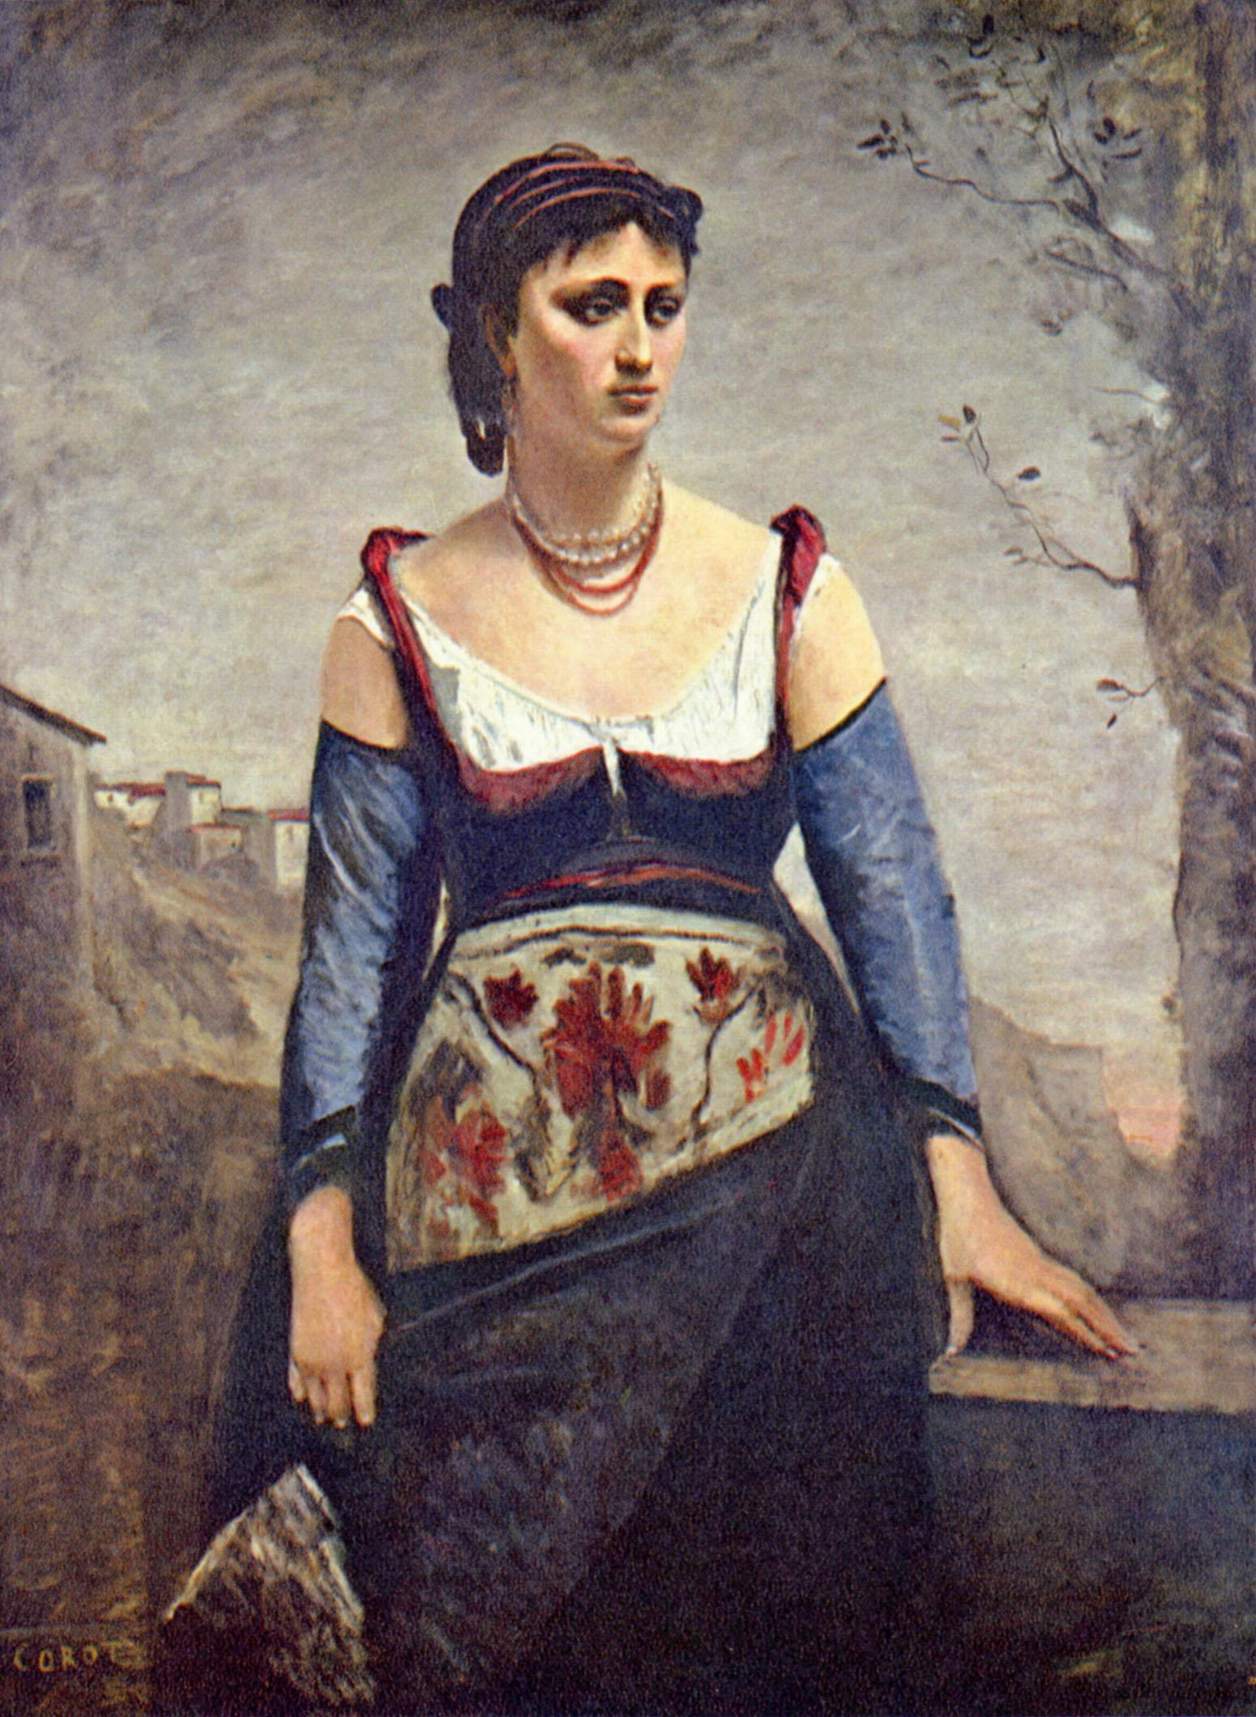 Жан-Батист-Камиль Коро. "Итальянка Агостина". 1866.